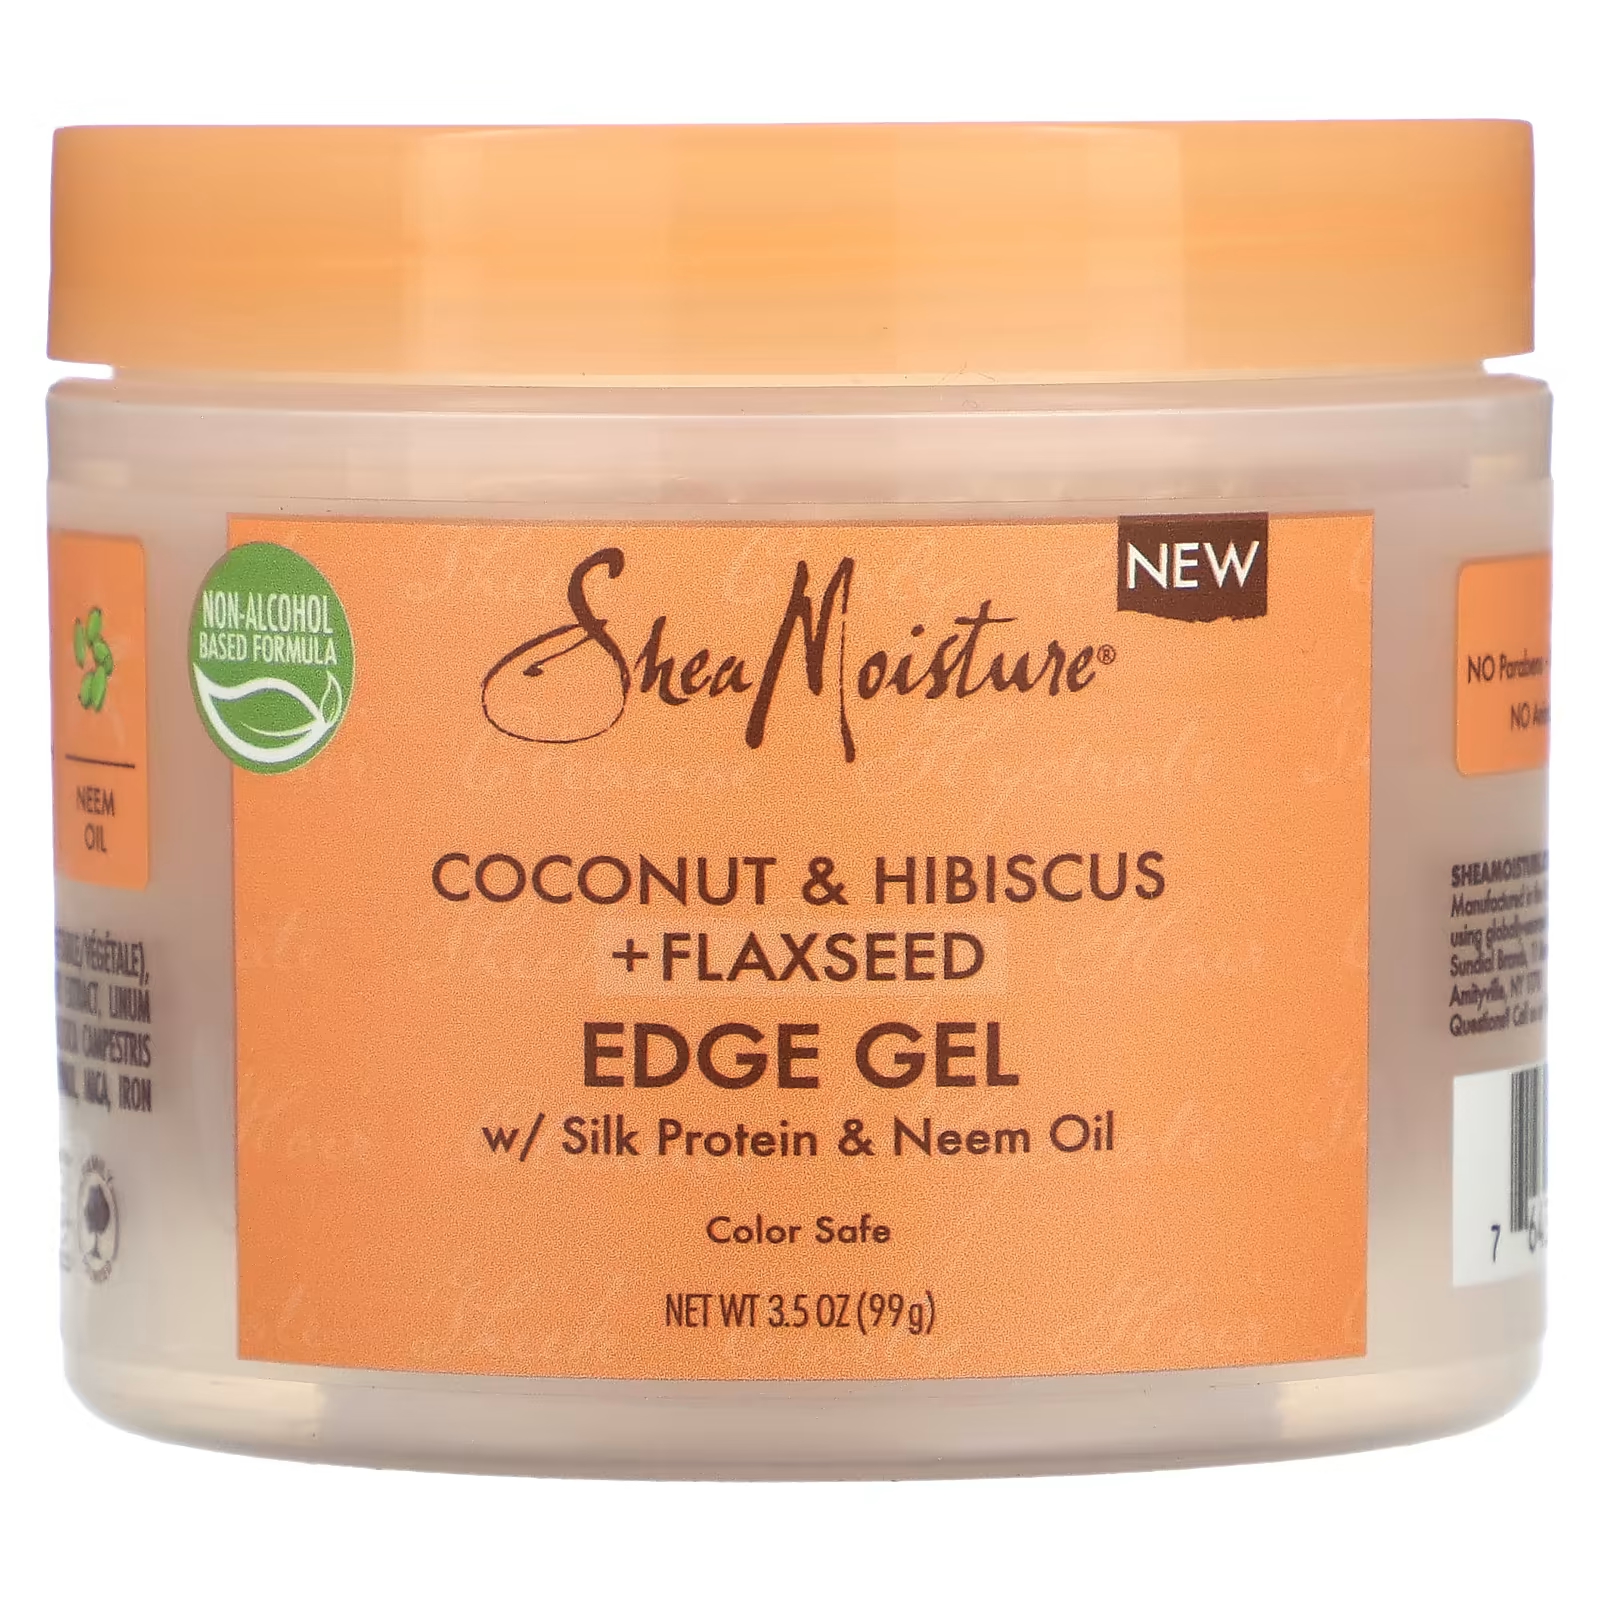 Гель для волос SheaMoisture Edge Gel кокос гибискус и льняное семя, 99г sheamoisture edge gel кокос гибискус и льняное семя 99 г 3 5 унции